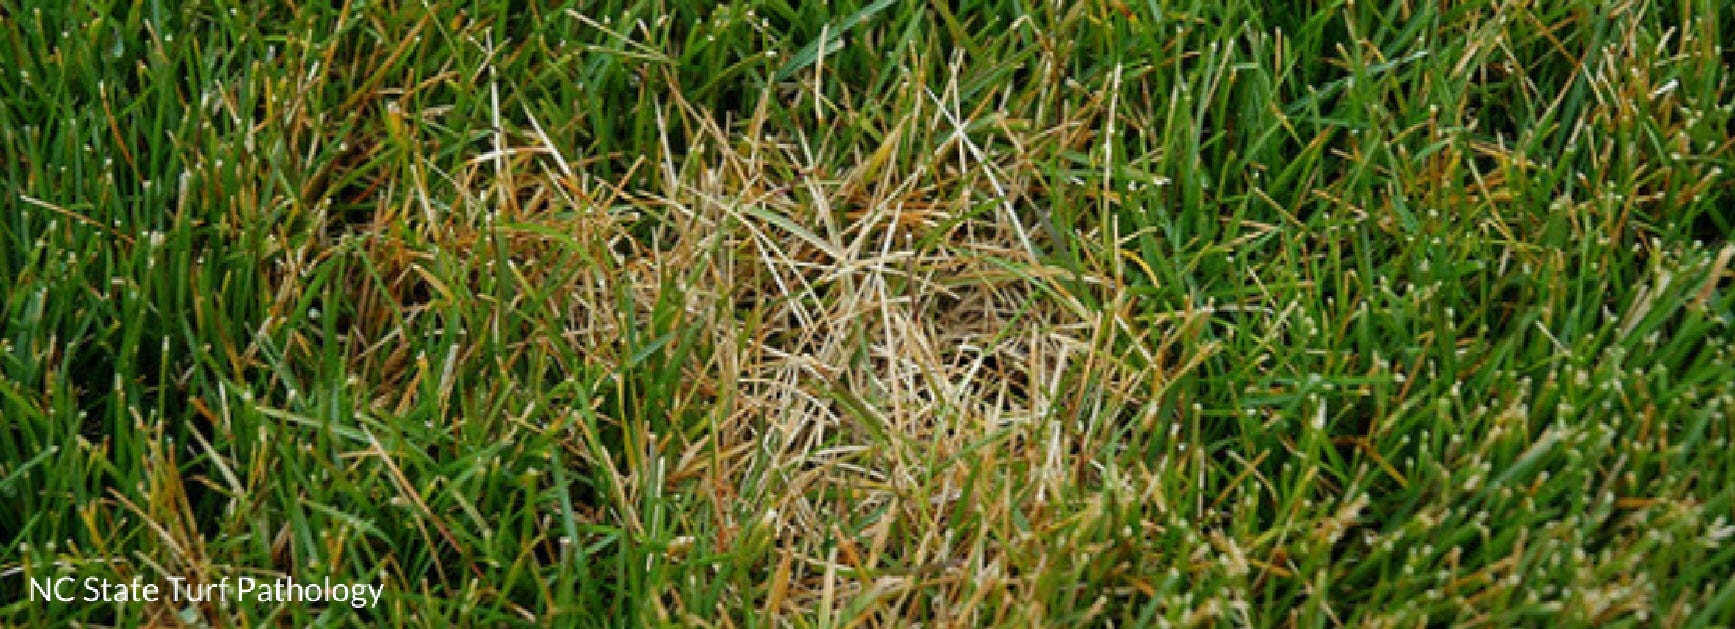 dollar spot grass disease